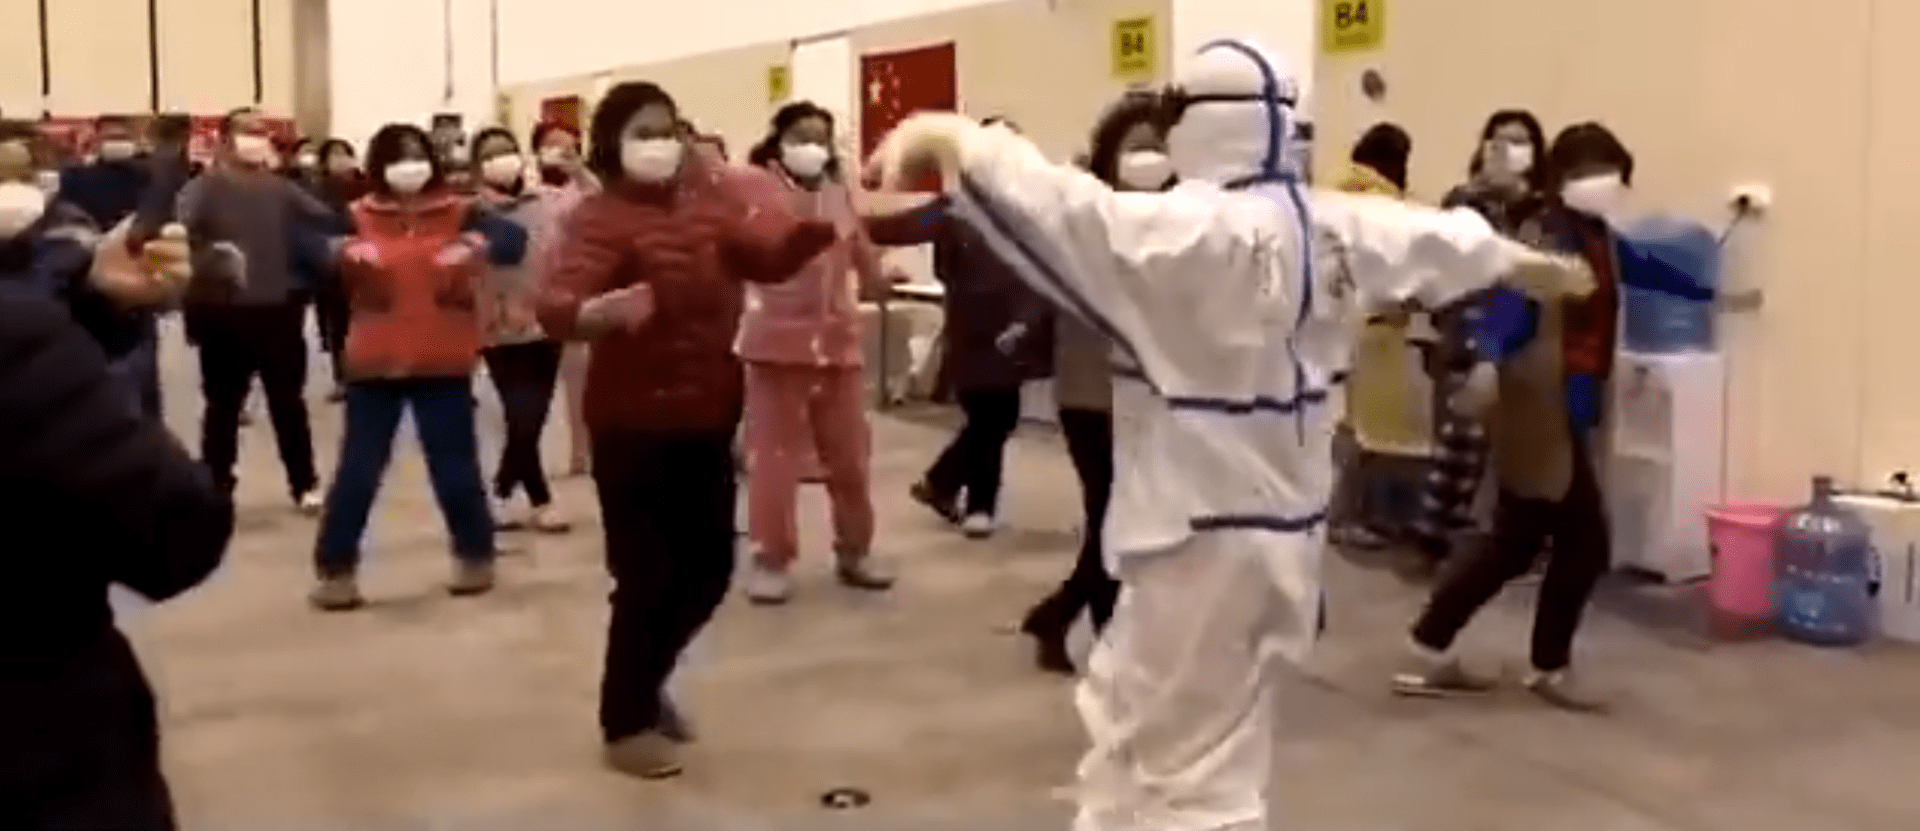 Nemocnice ve Wu-chanu se dala do pohybu. Personál i pacienti tancují.